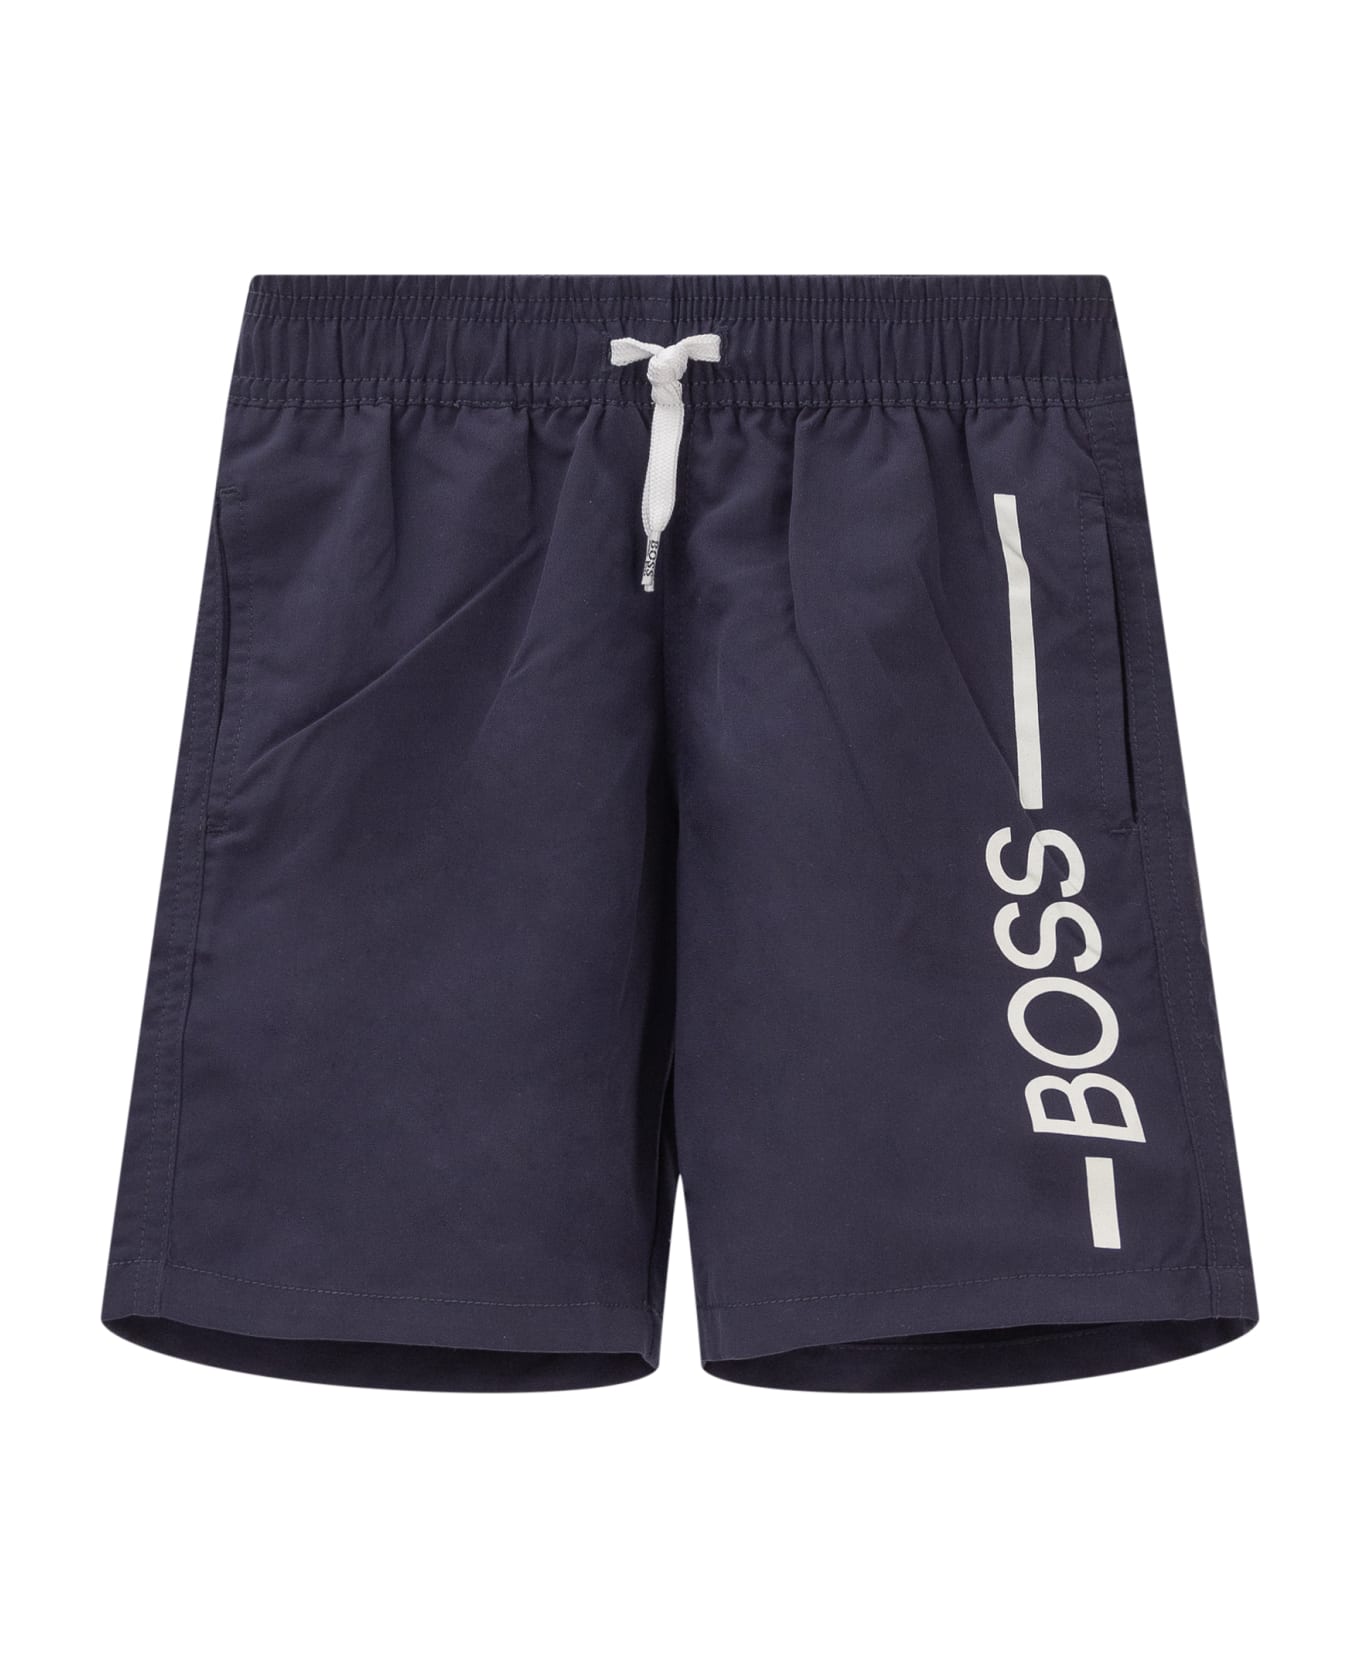 Hugo Boss Swim Shorts - MARINE